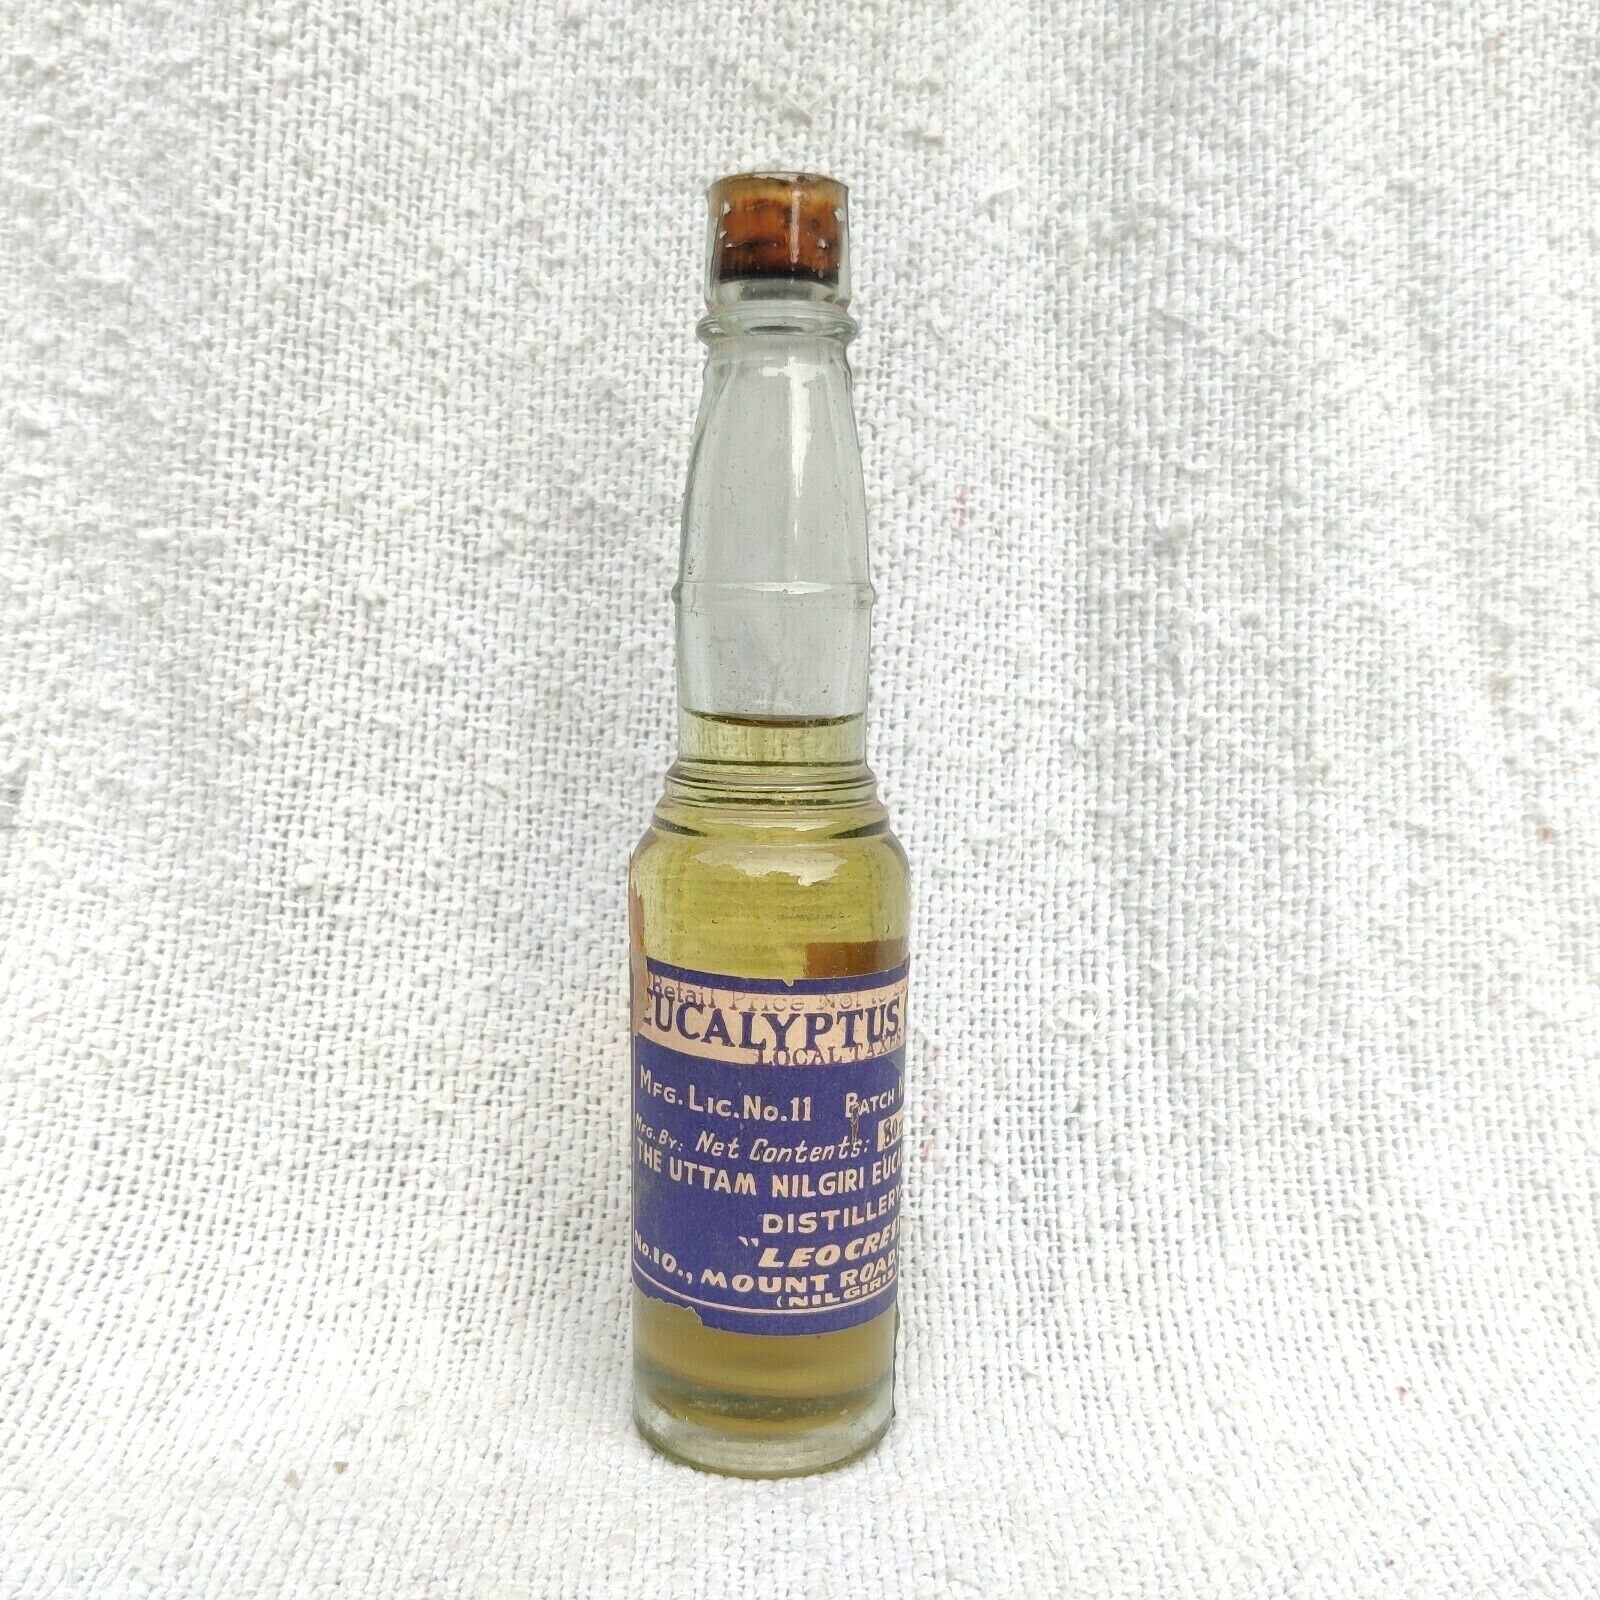 1930s Vintage The Uttam Nilgiri Leocrest Eucalyptus Oil Bottle Cork Cap G977